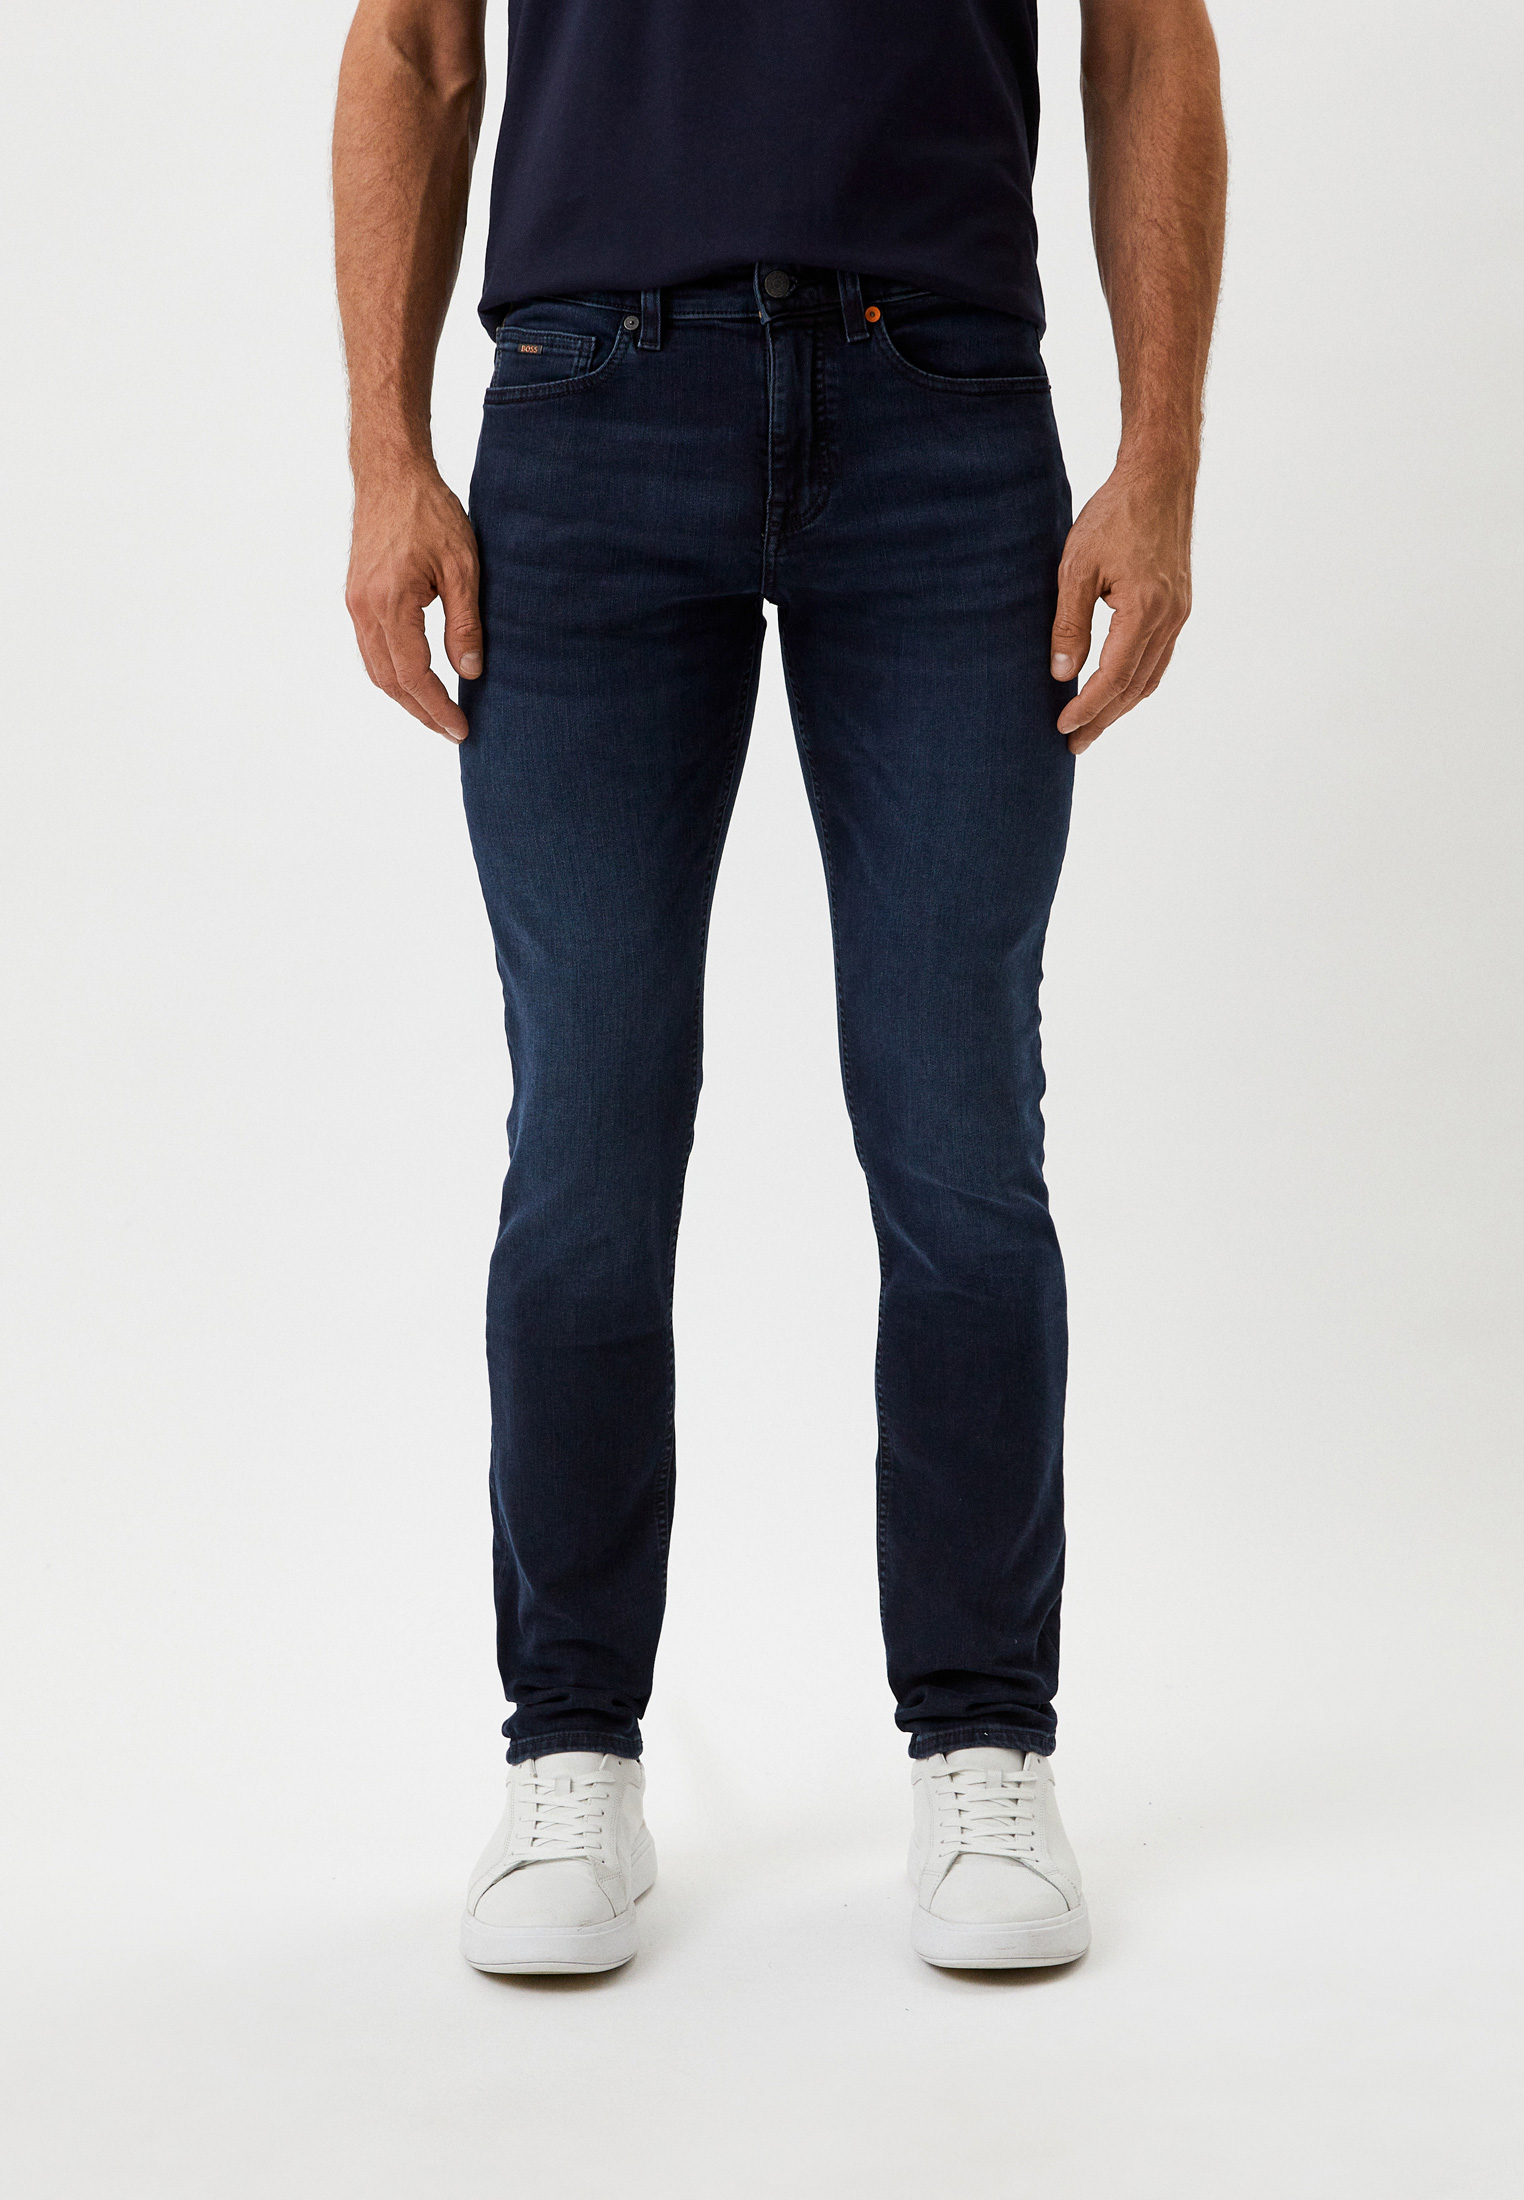 Мужские прямые джинсы Boss (Босс) 50479989: изображение 1